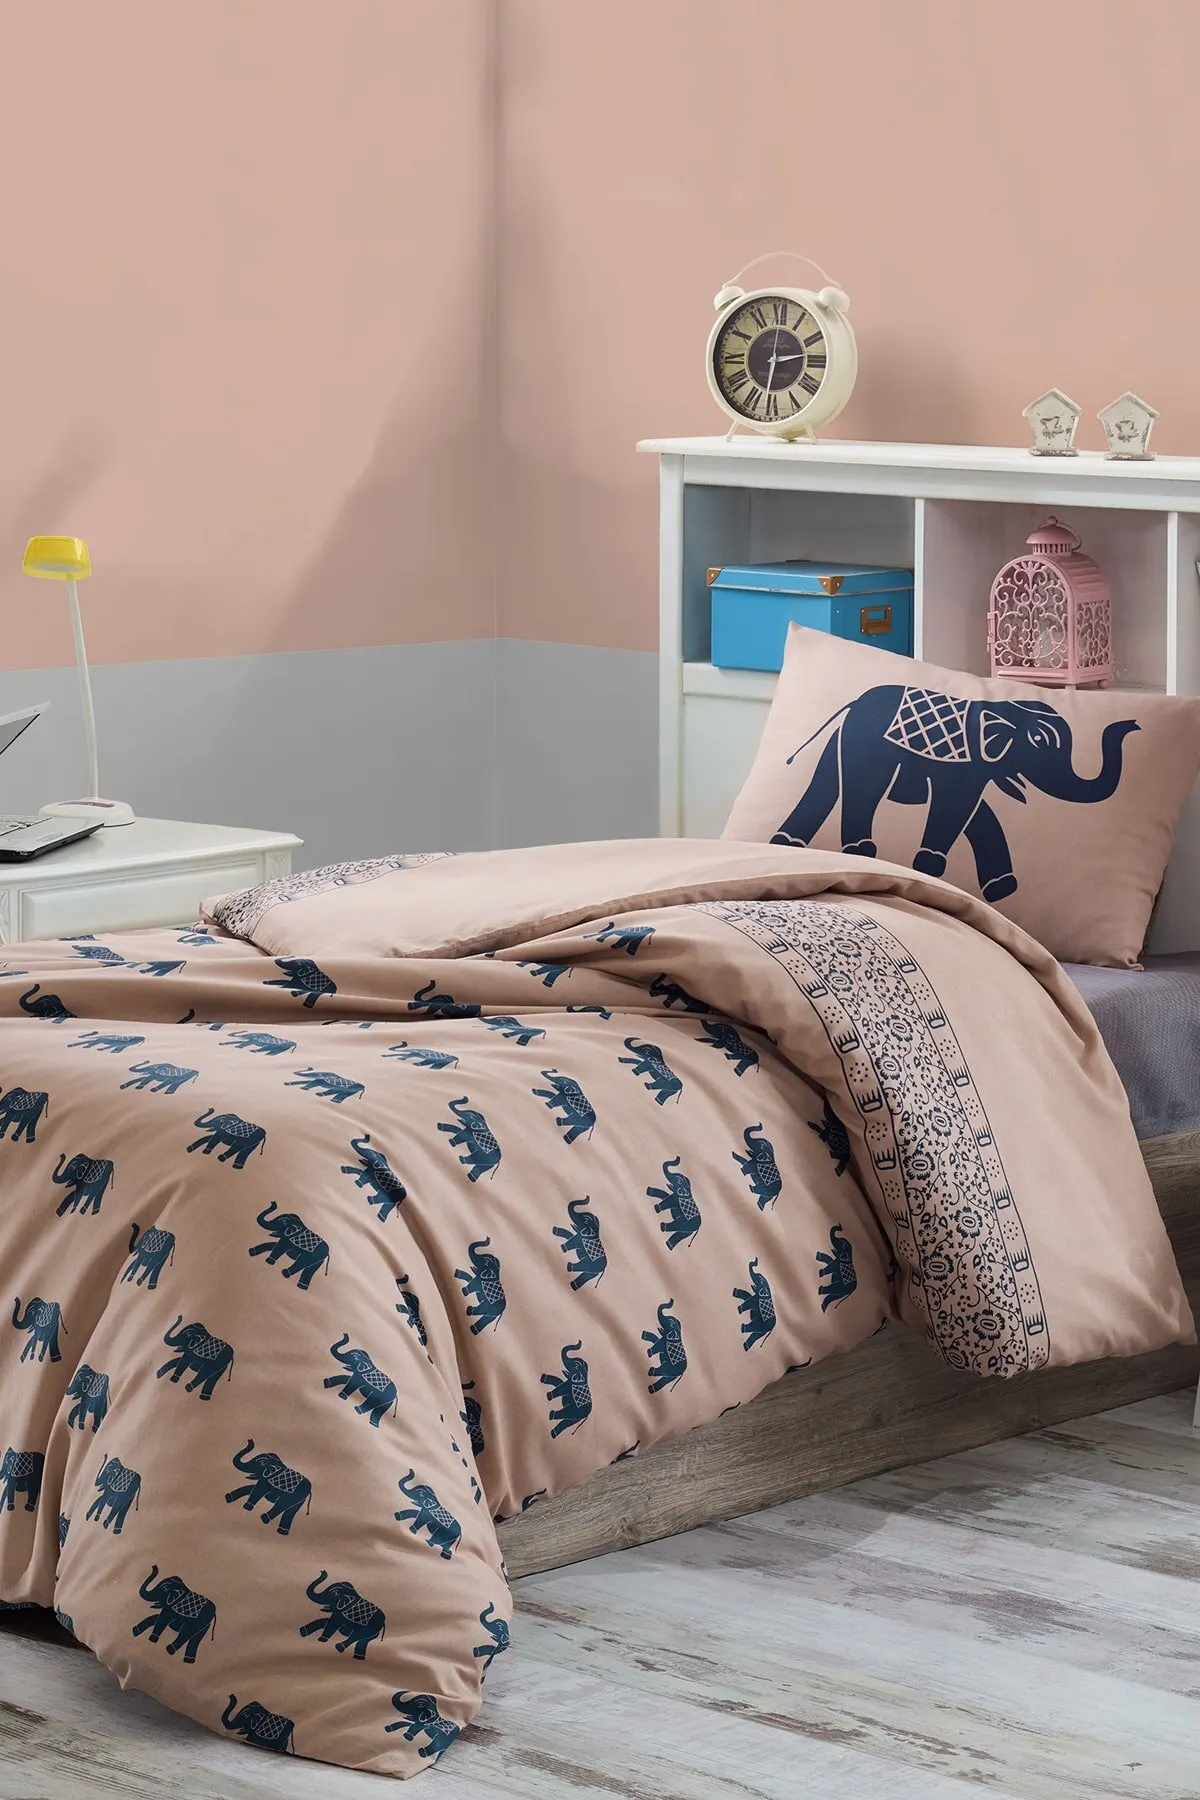 

Домашний текстиль, комплект пододеяльников из 100 натурального хлопка, индивидуальный односпальный костюм со слоном, кофейно-темно-синий